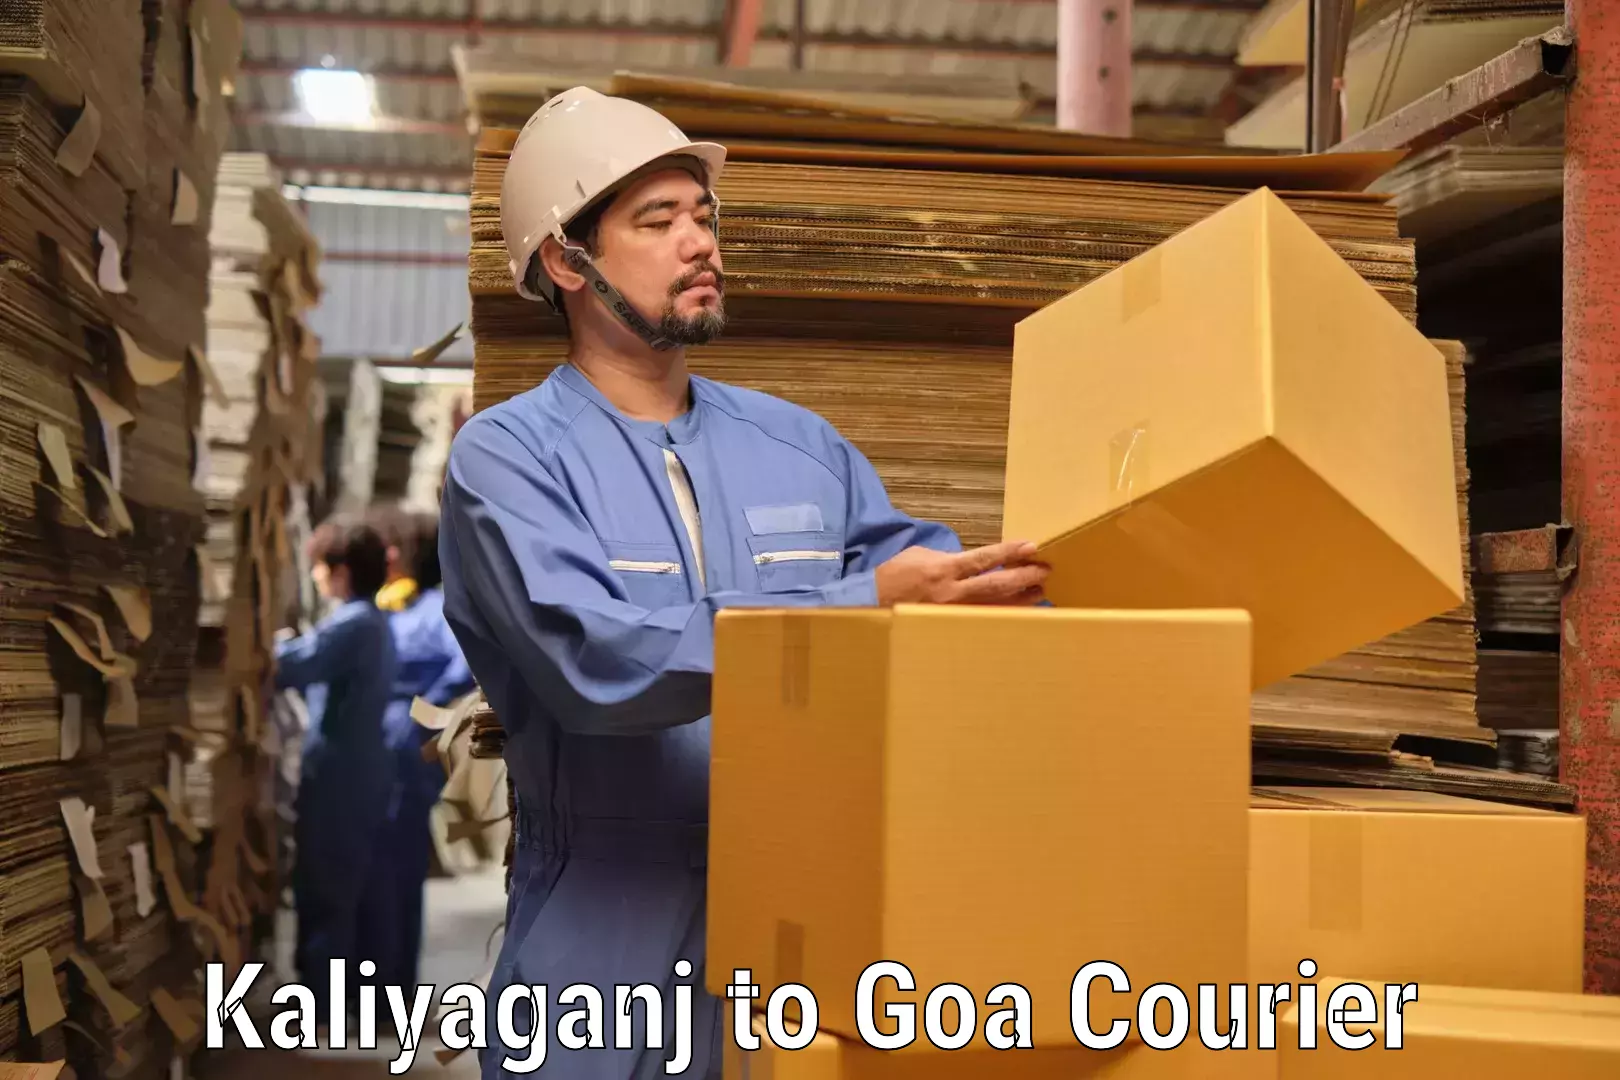 Quality courier services Kaliyaganj to Goa University